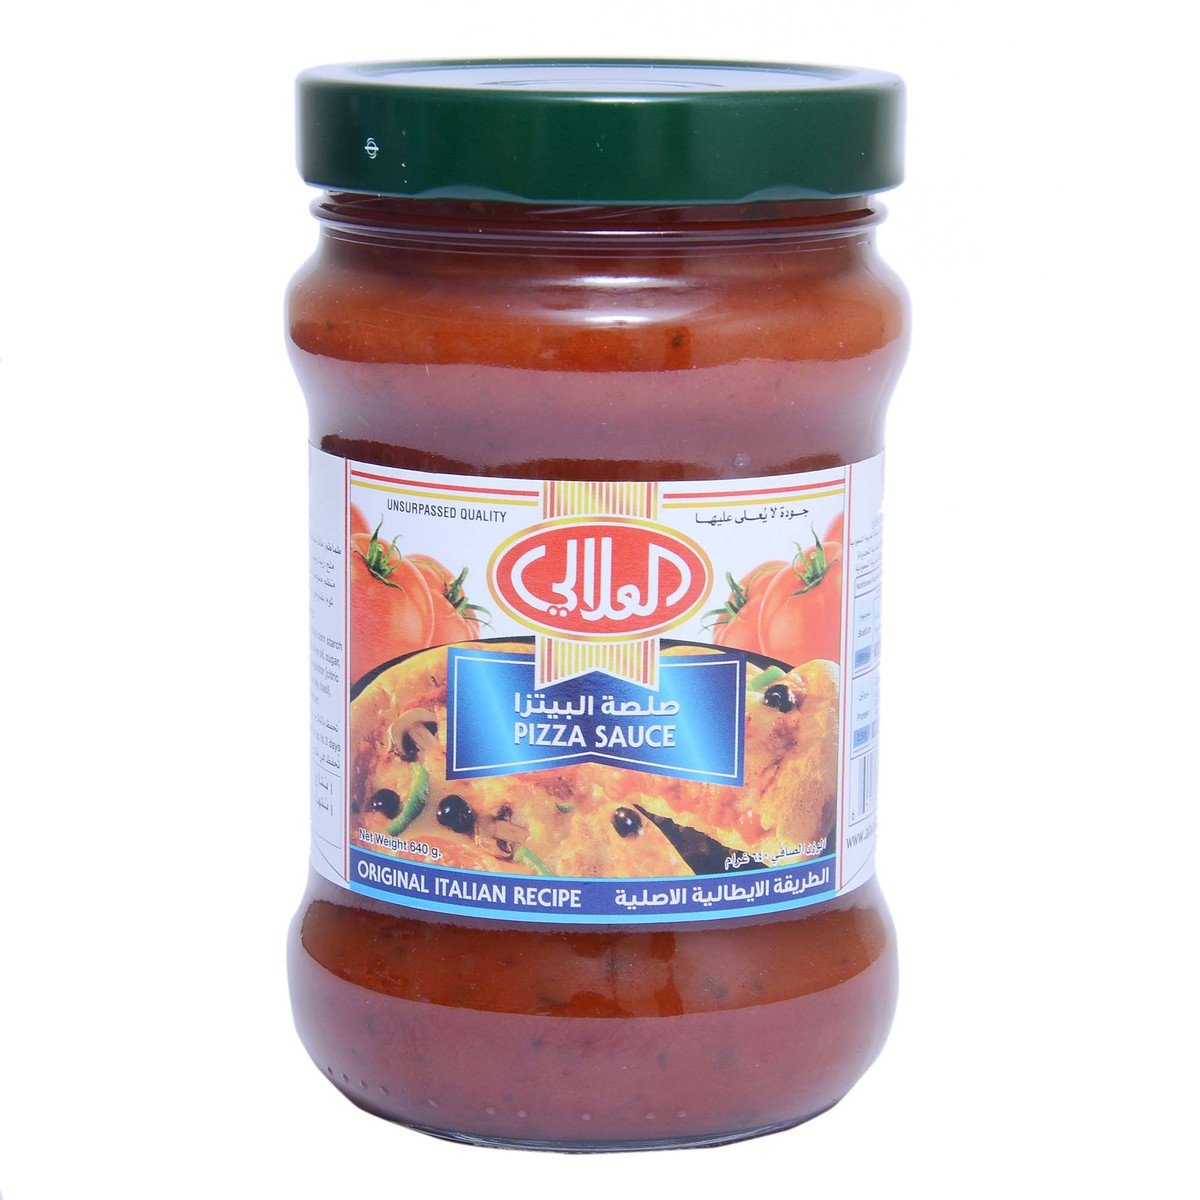 اشتري قم بشراء العلالي صلصة البيتزا الايطالية الأصلية ٦٤٠ جم Online at Best Price من الموقع - من لولو هايبر ماركت Cooking Sauce في الكويت